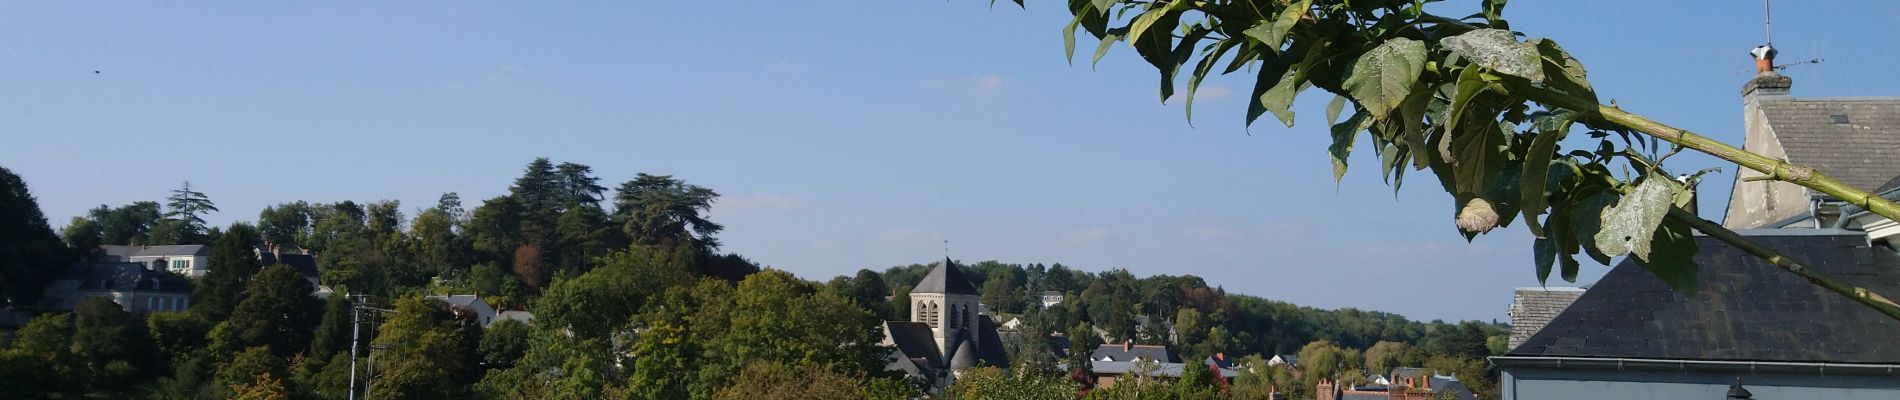 Tocht Stappen Tours (Indre-et-Loire) - Tours - Marmoutier GR3 GR655 Rochecorbon - 8.2km 105m 1h50 - 2021 10 09 - Photo